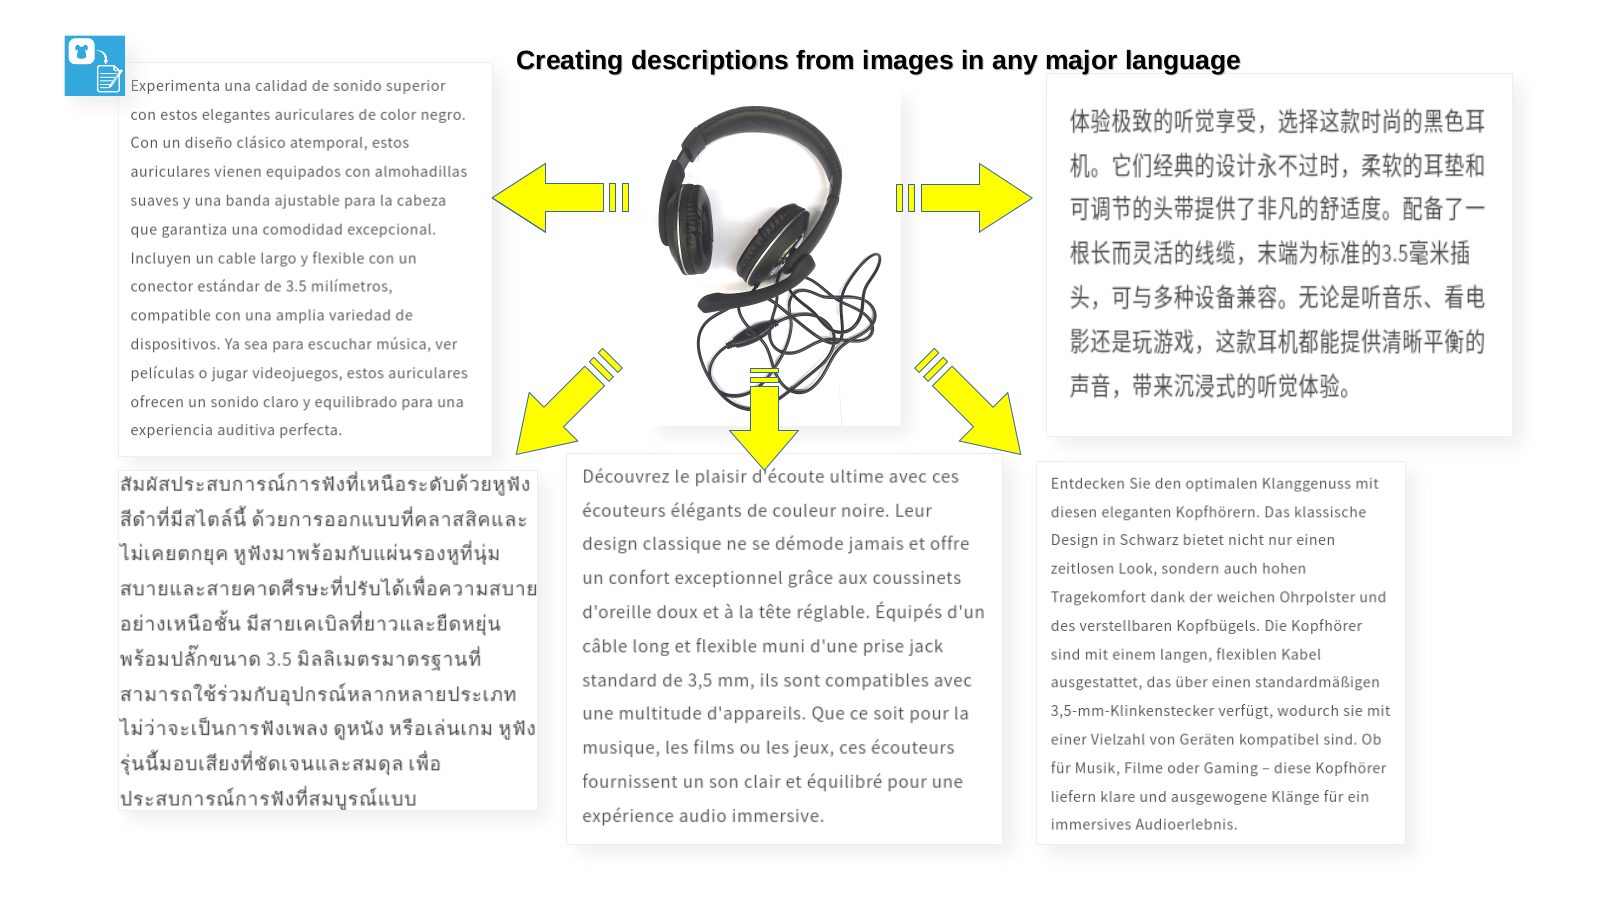 Images de produits et contenu généré, exemple en plusieurs langues